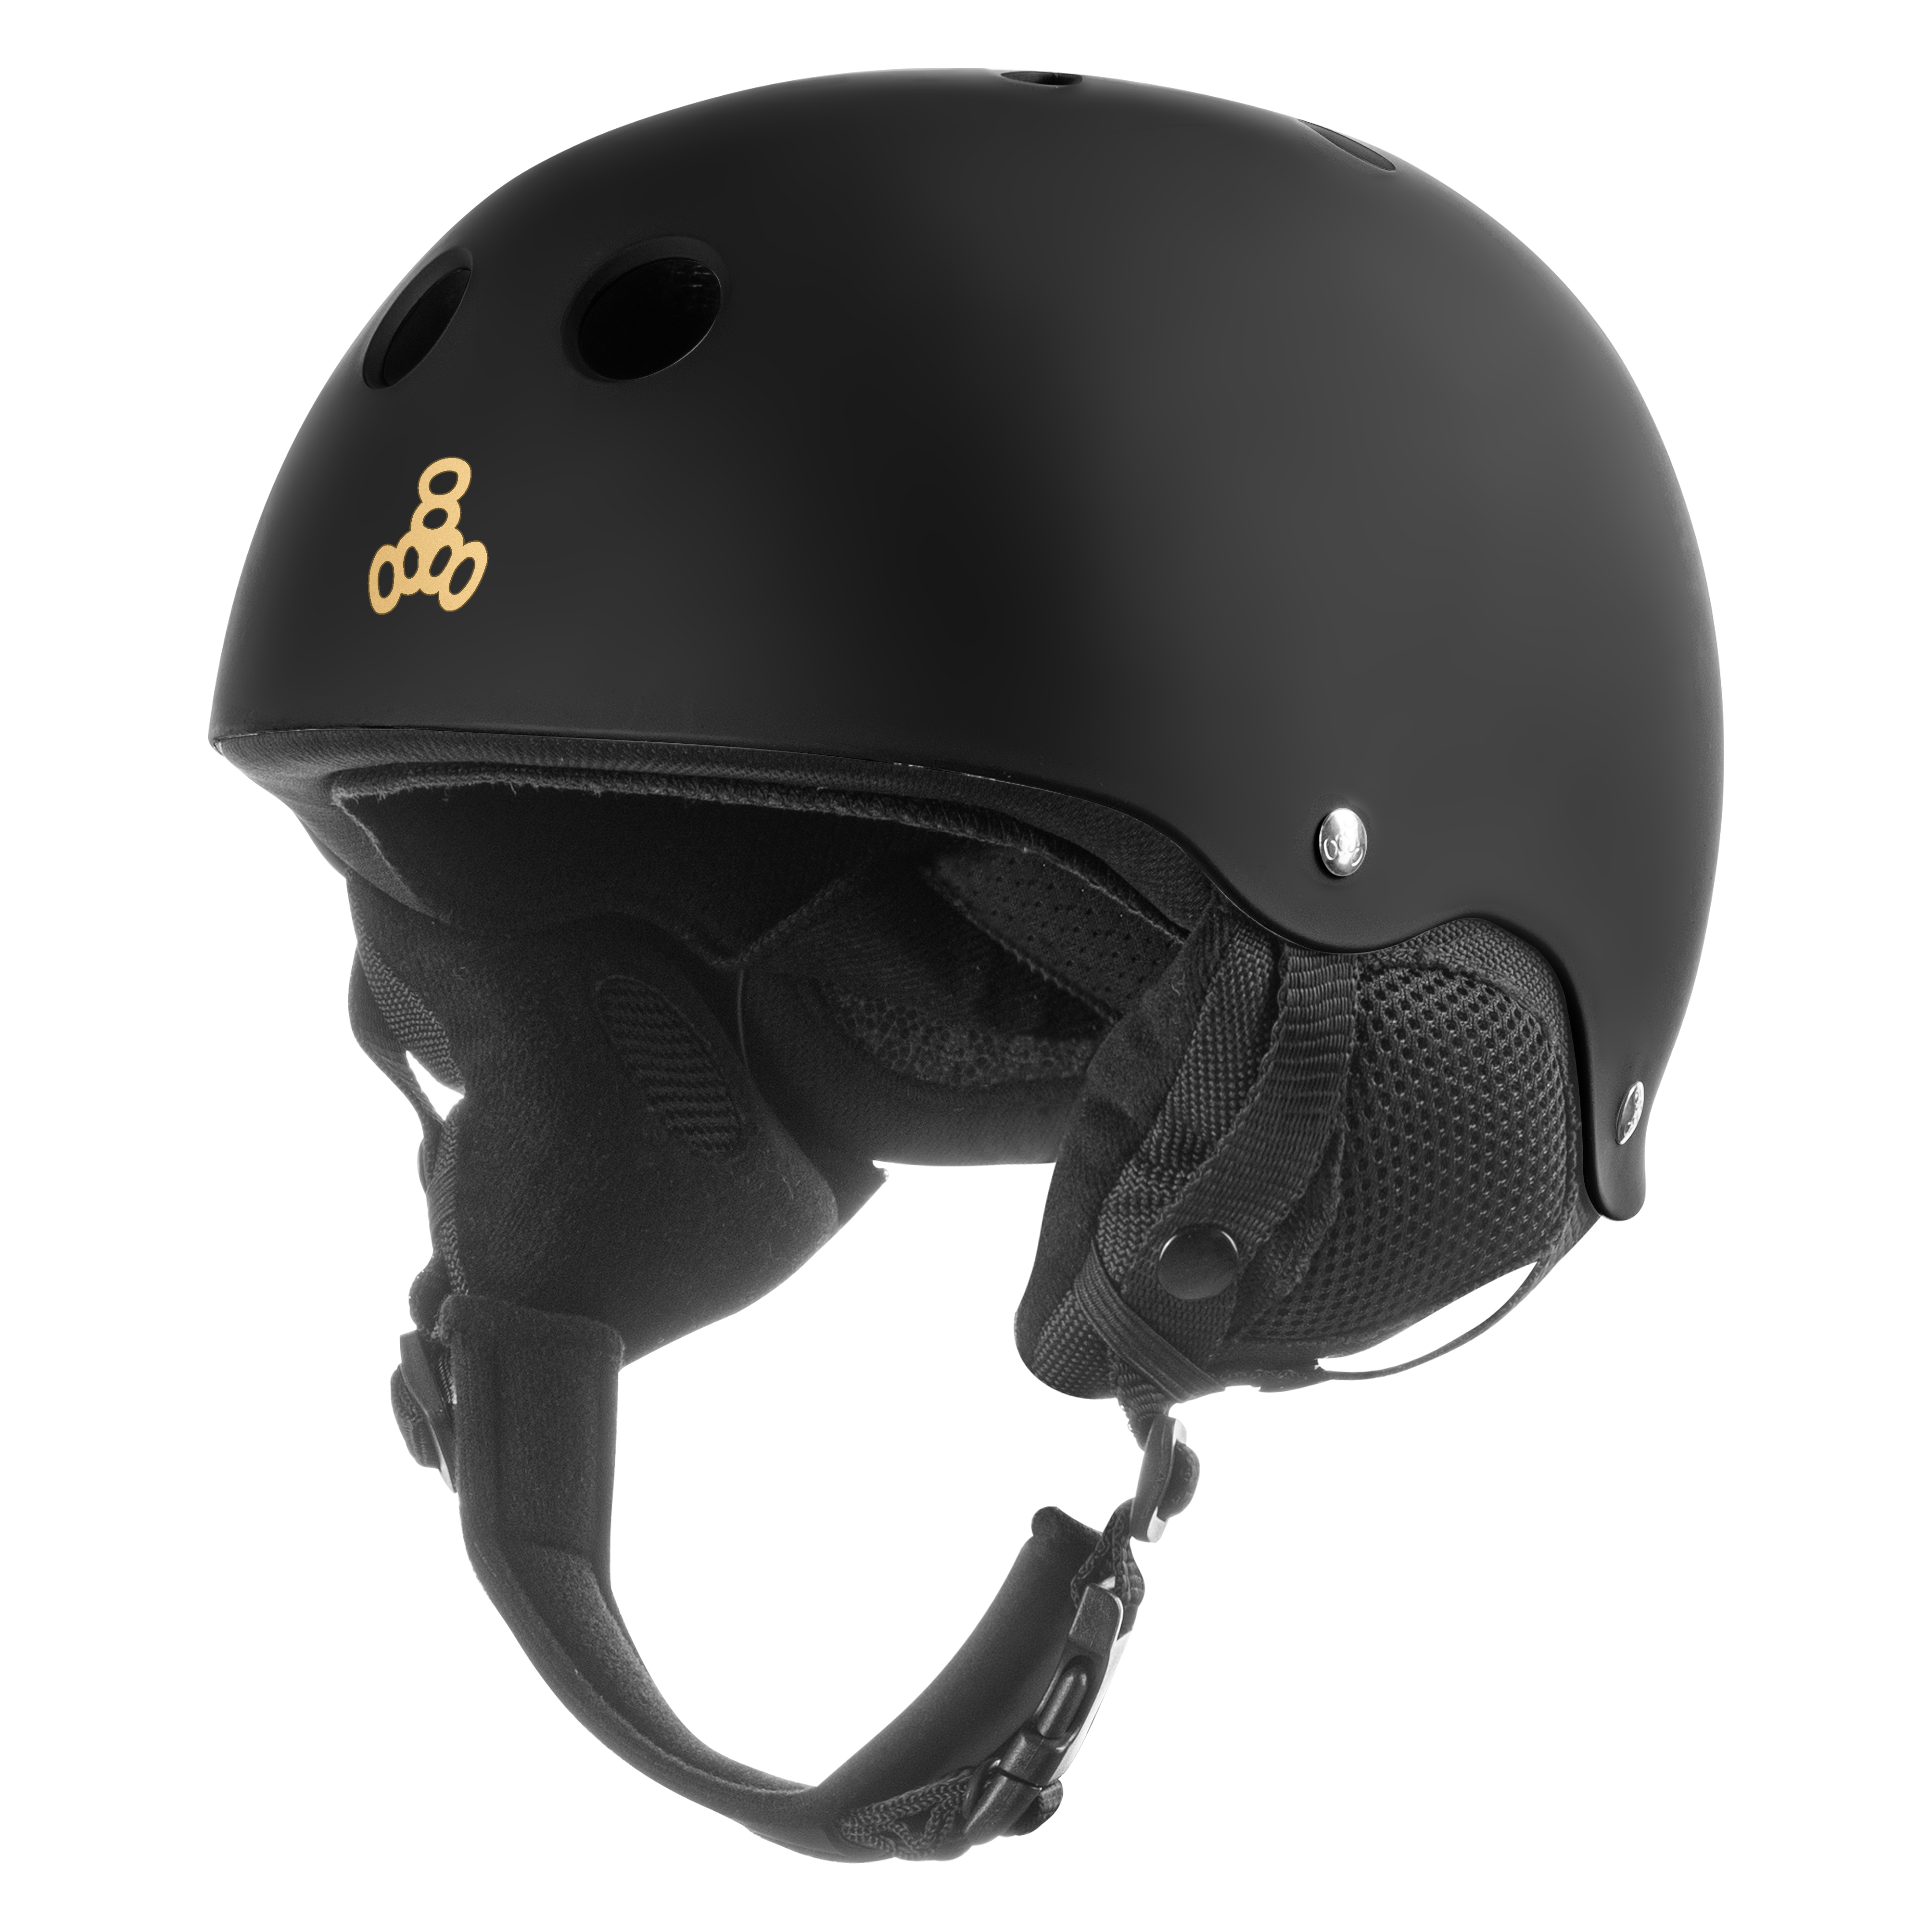 Защитный шлем для детей Triple8 Old School Jr Black (XS)